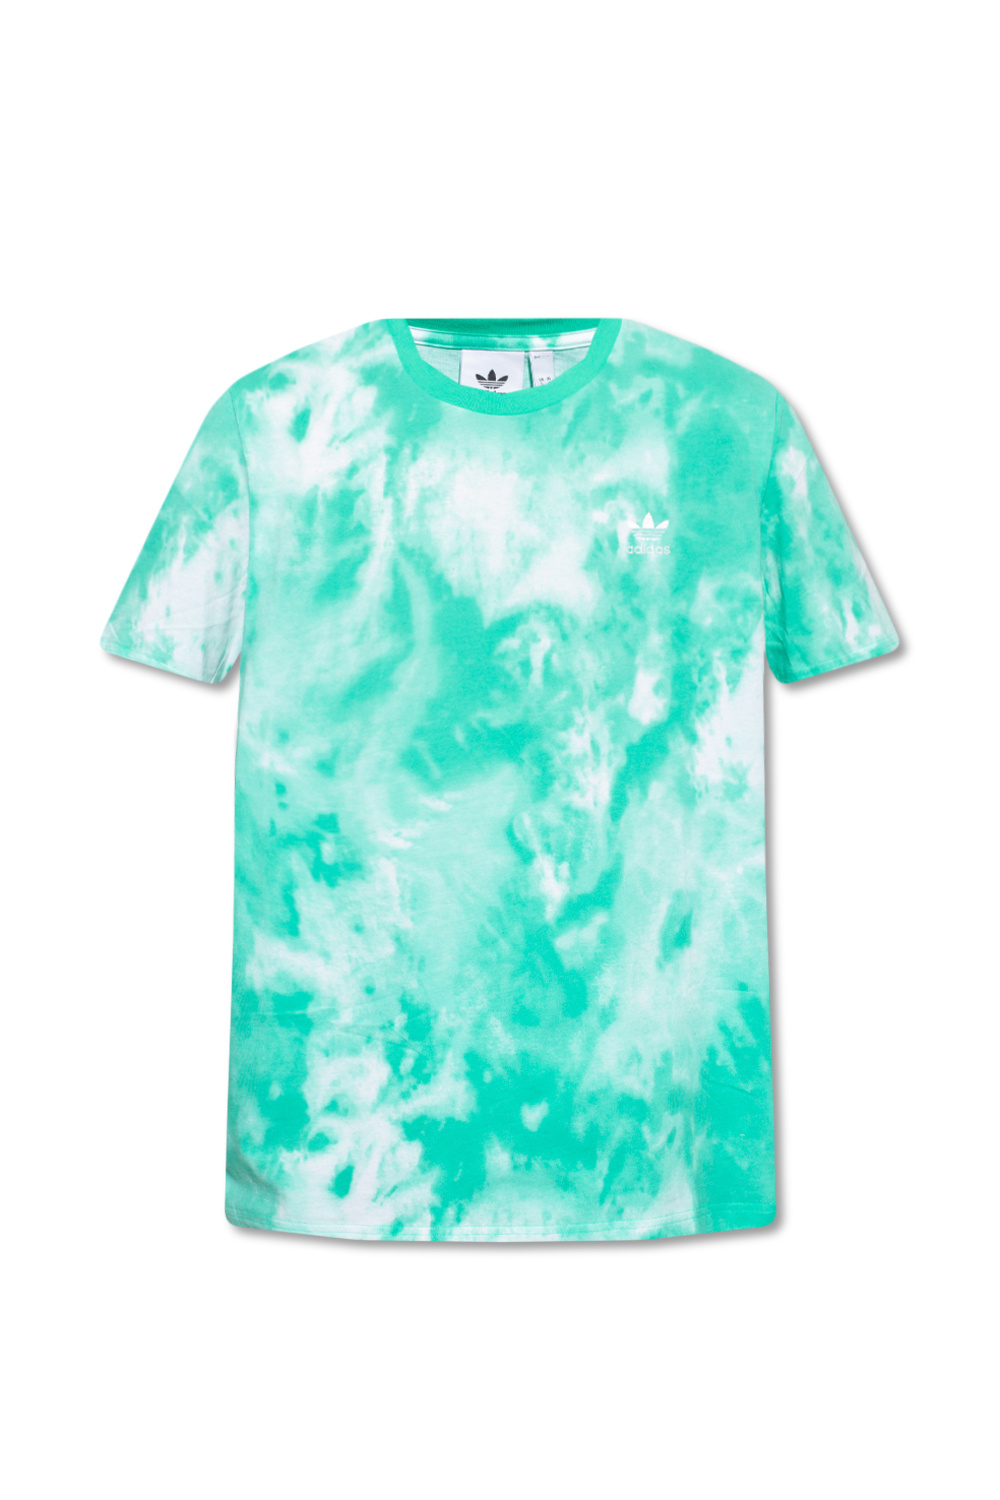 Eigenaardig Overname Chemie Green Tie-dye T-shirt ADIDAS Originals - Vitkac TW